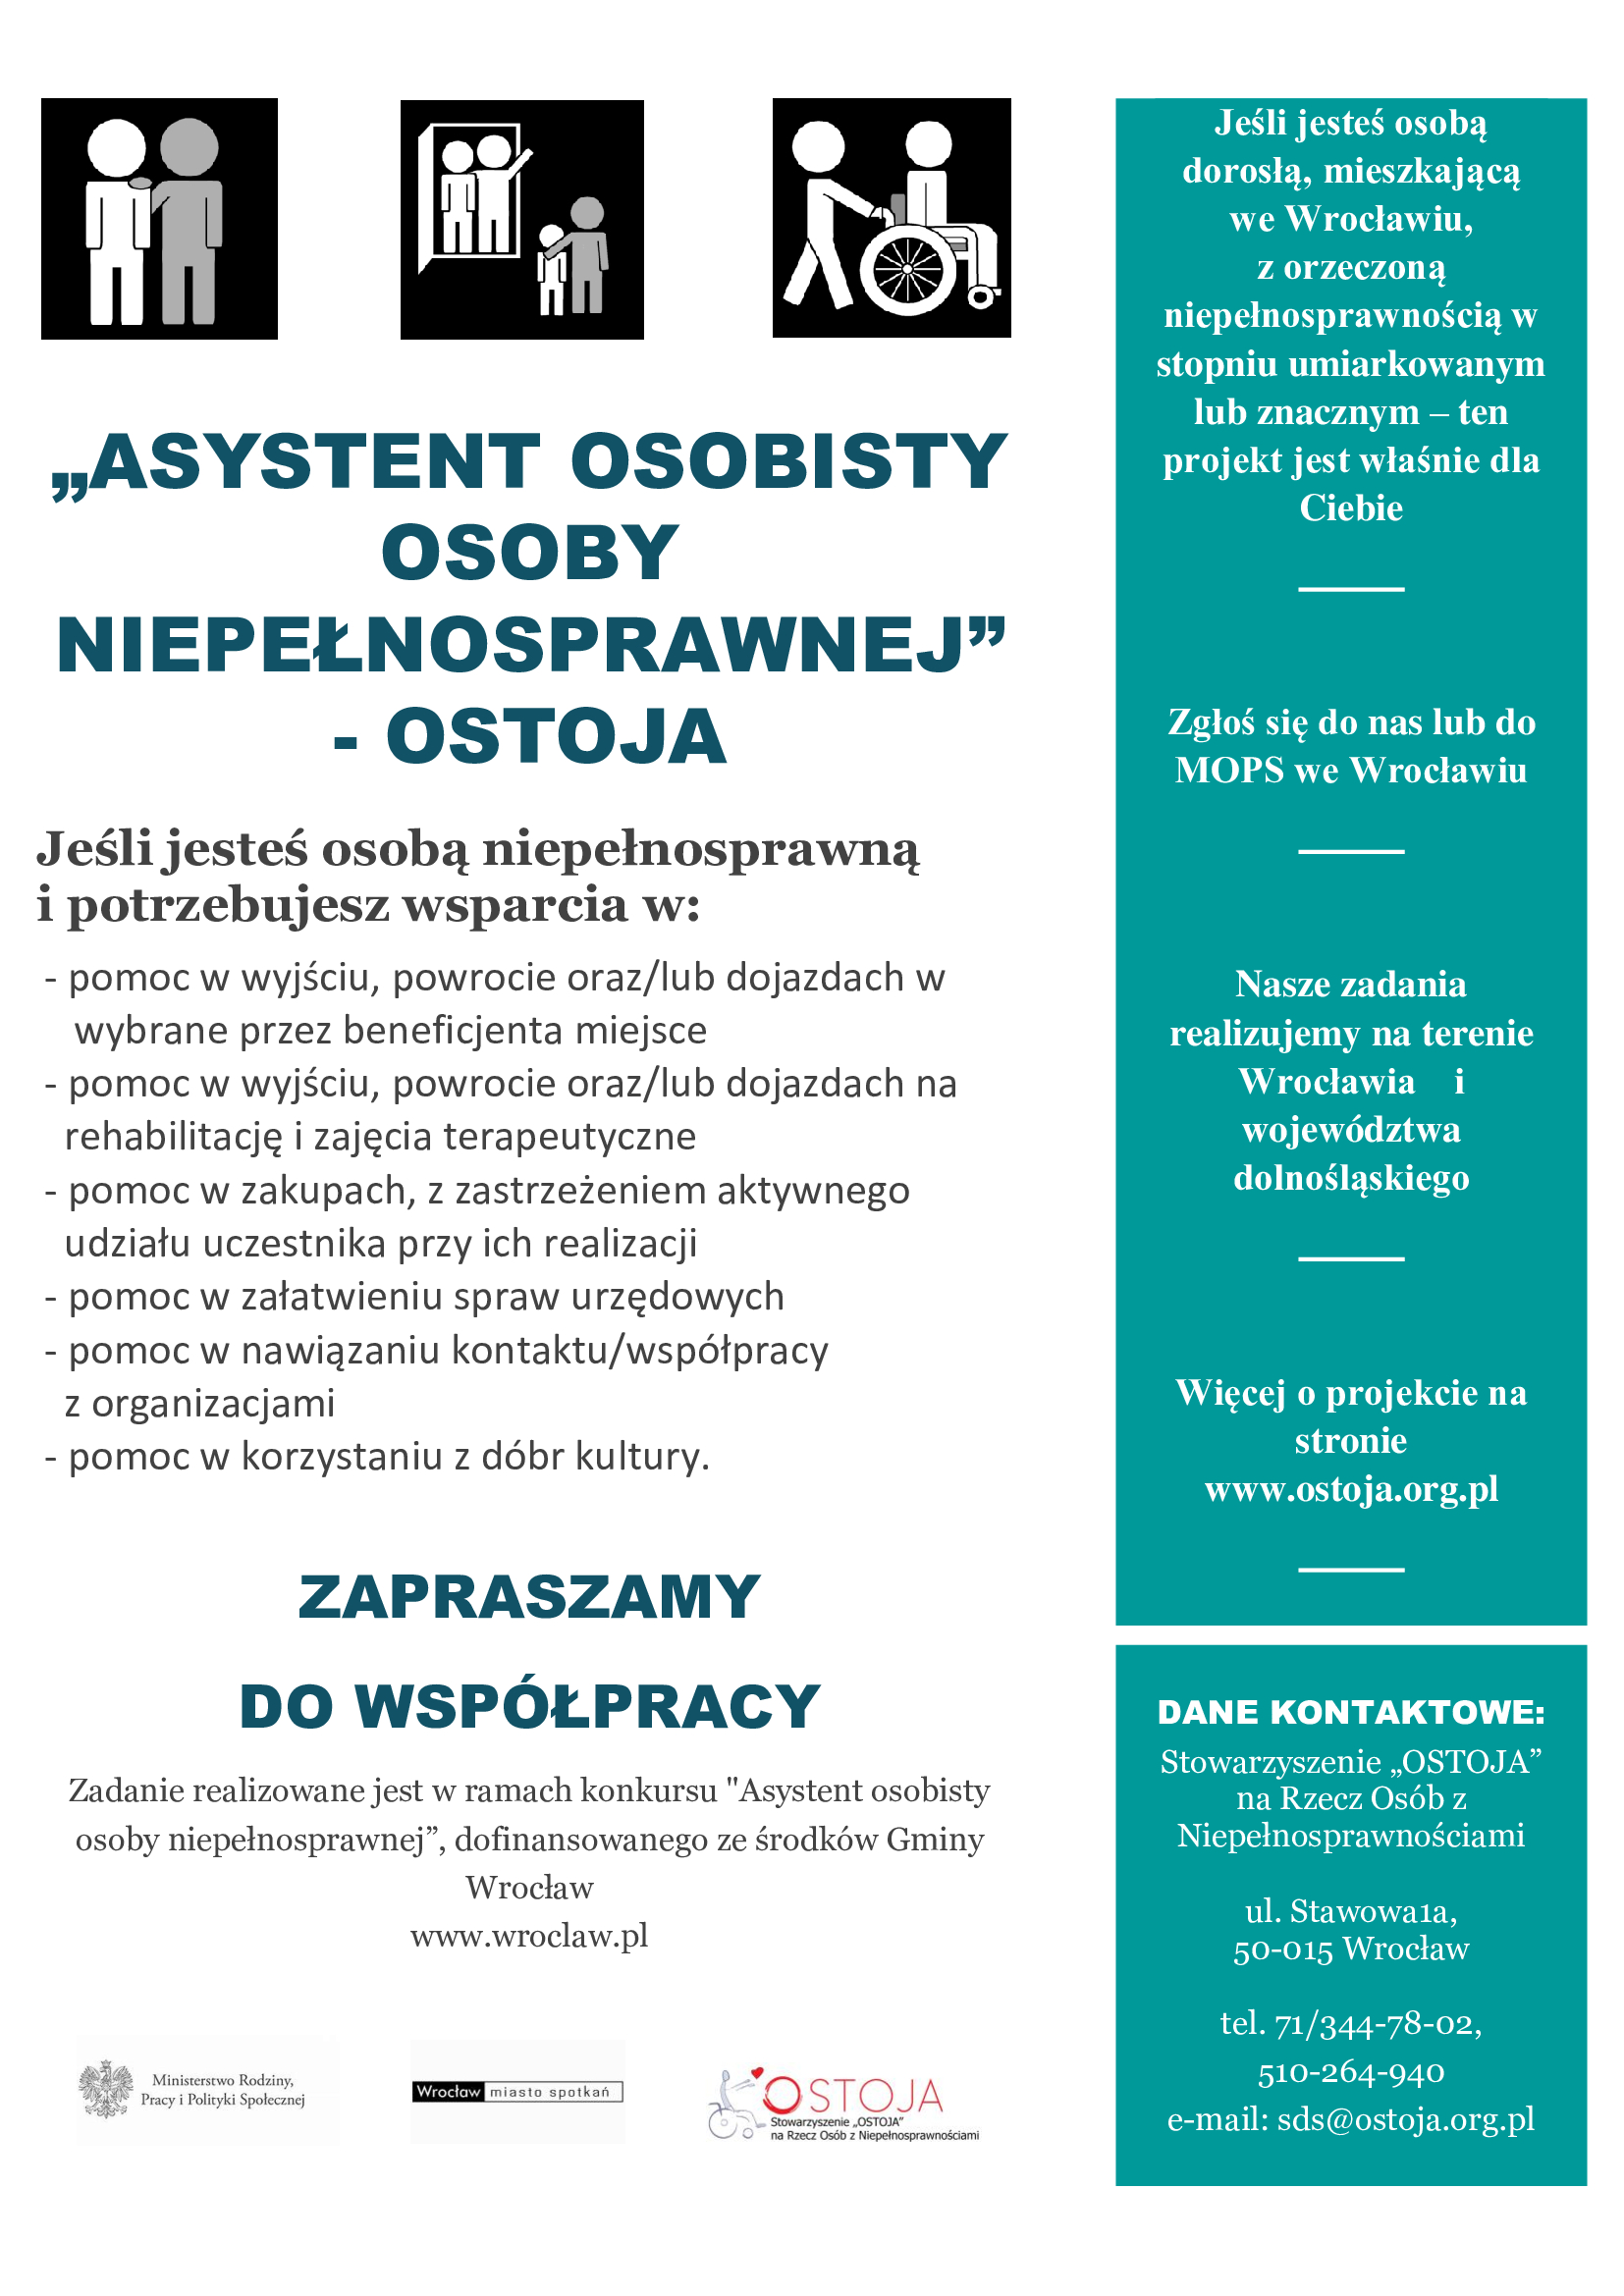 asystent projekt 2020 Ostoja Wrocław